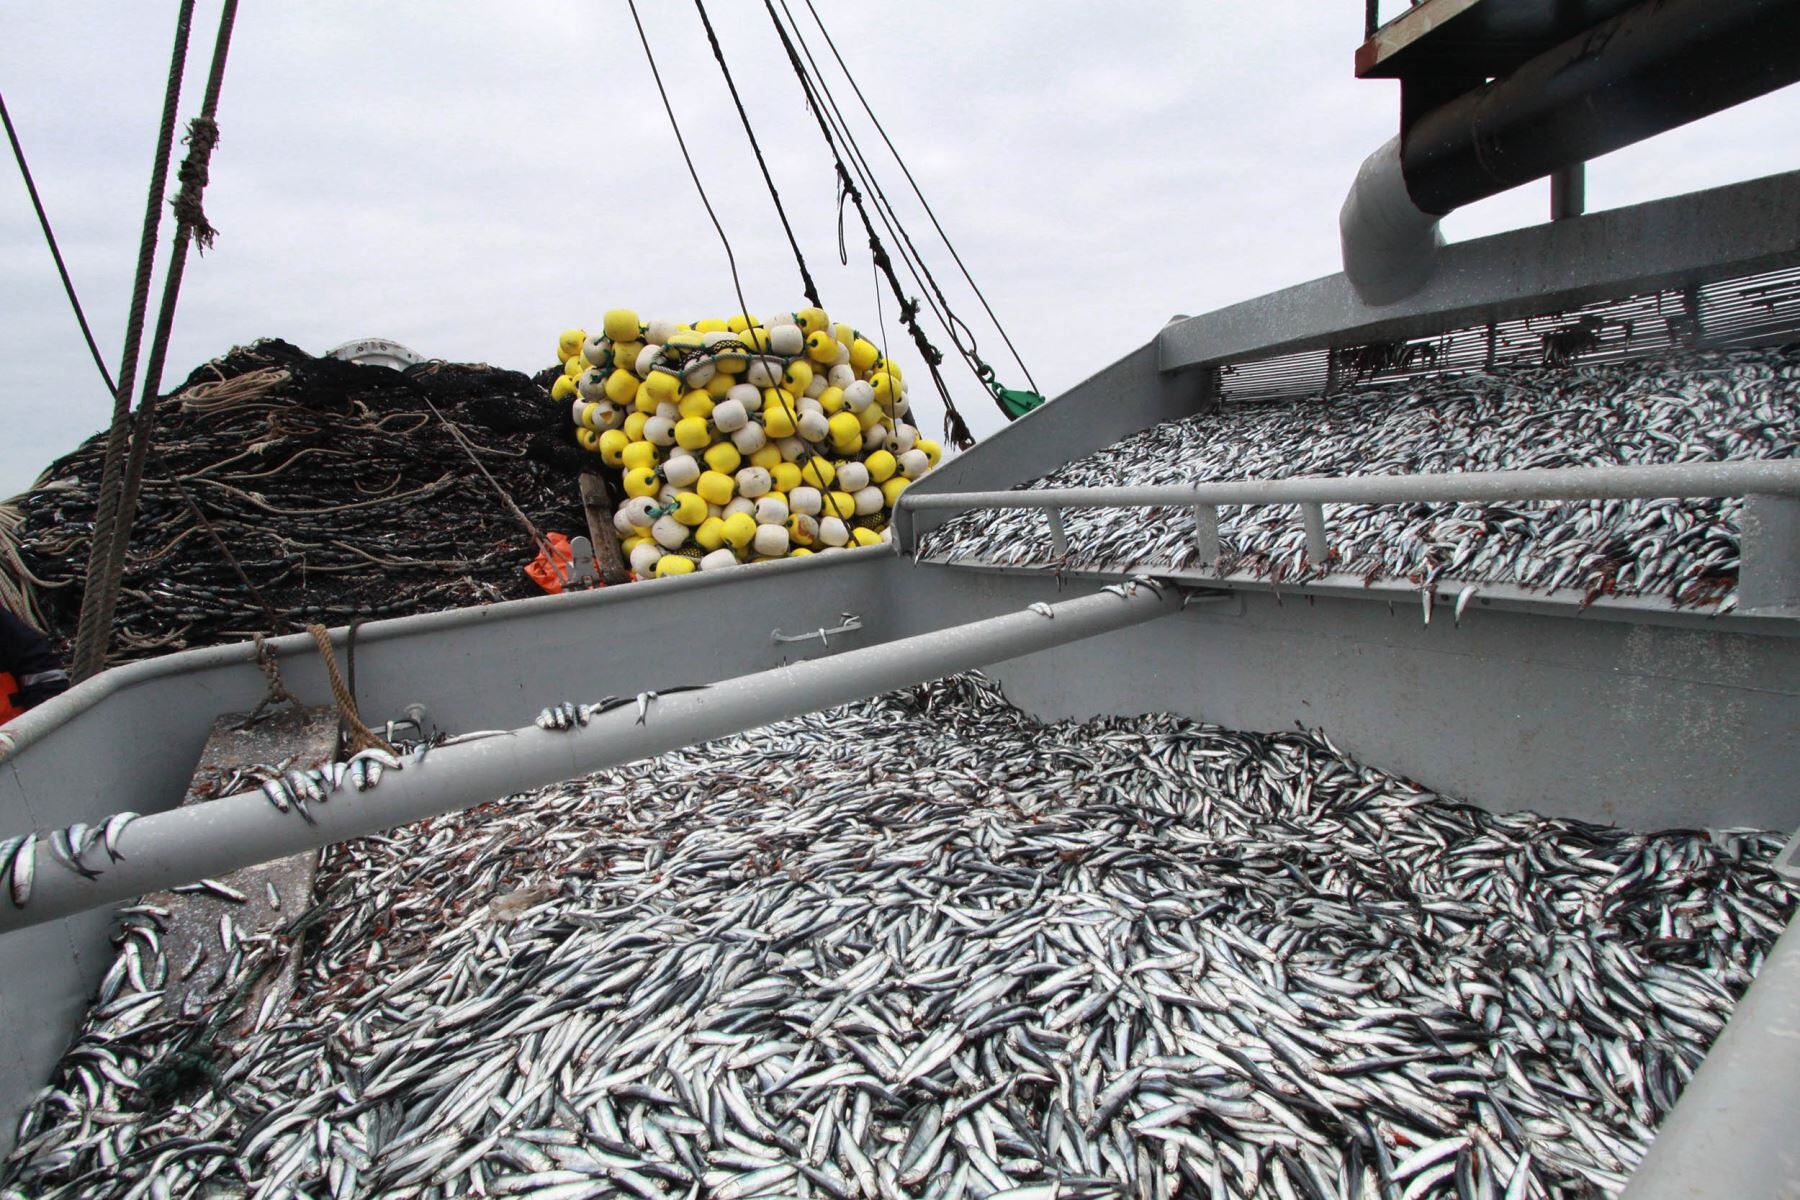 La Sociedad Nacional de Pesquería solicitó en octubre pasado que se les "reconozca la pesca industrial preexistente" en Paracas. Ante la negativa de Sernamp, acudieron al Poder Judicial.